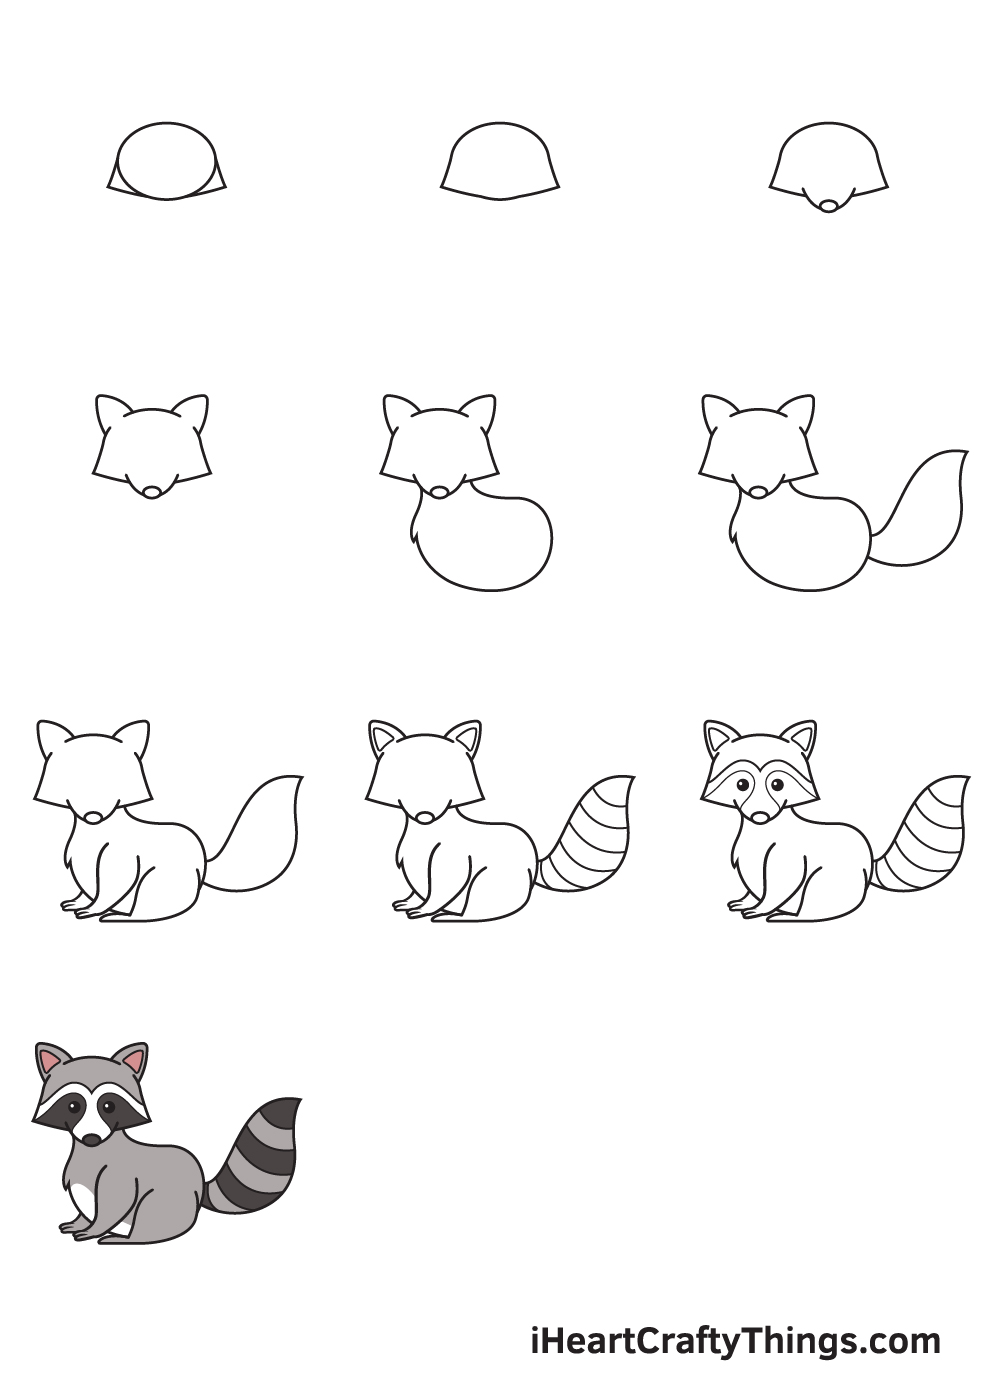 drawing raccoon in 9 steps